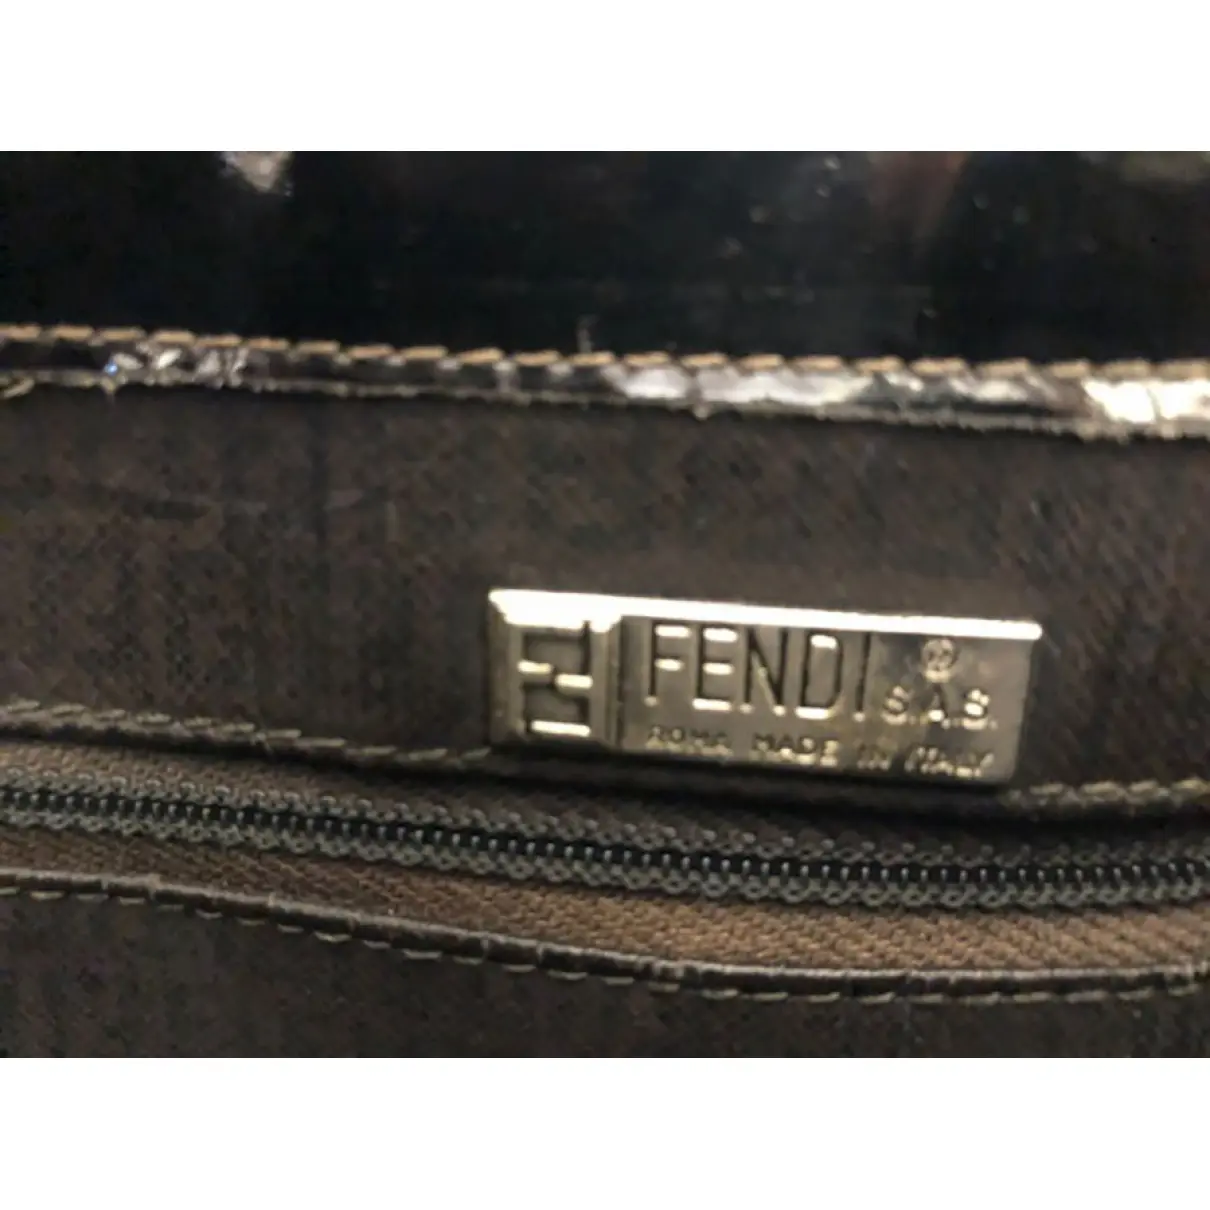 Patent leather tote Fendi - Vintage